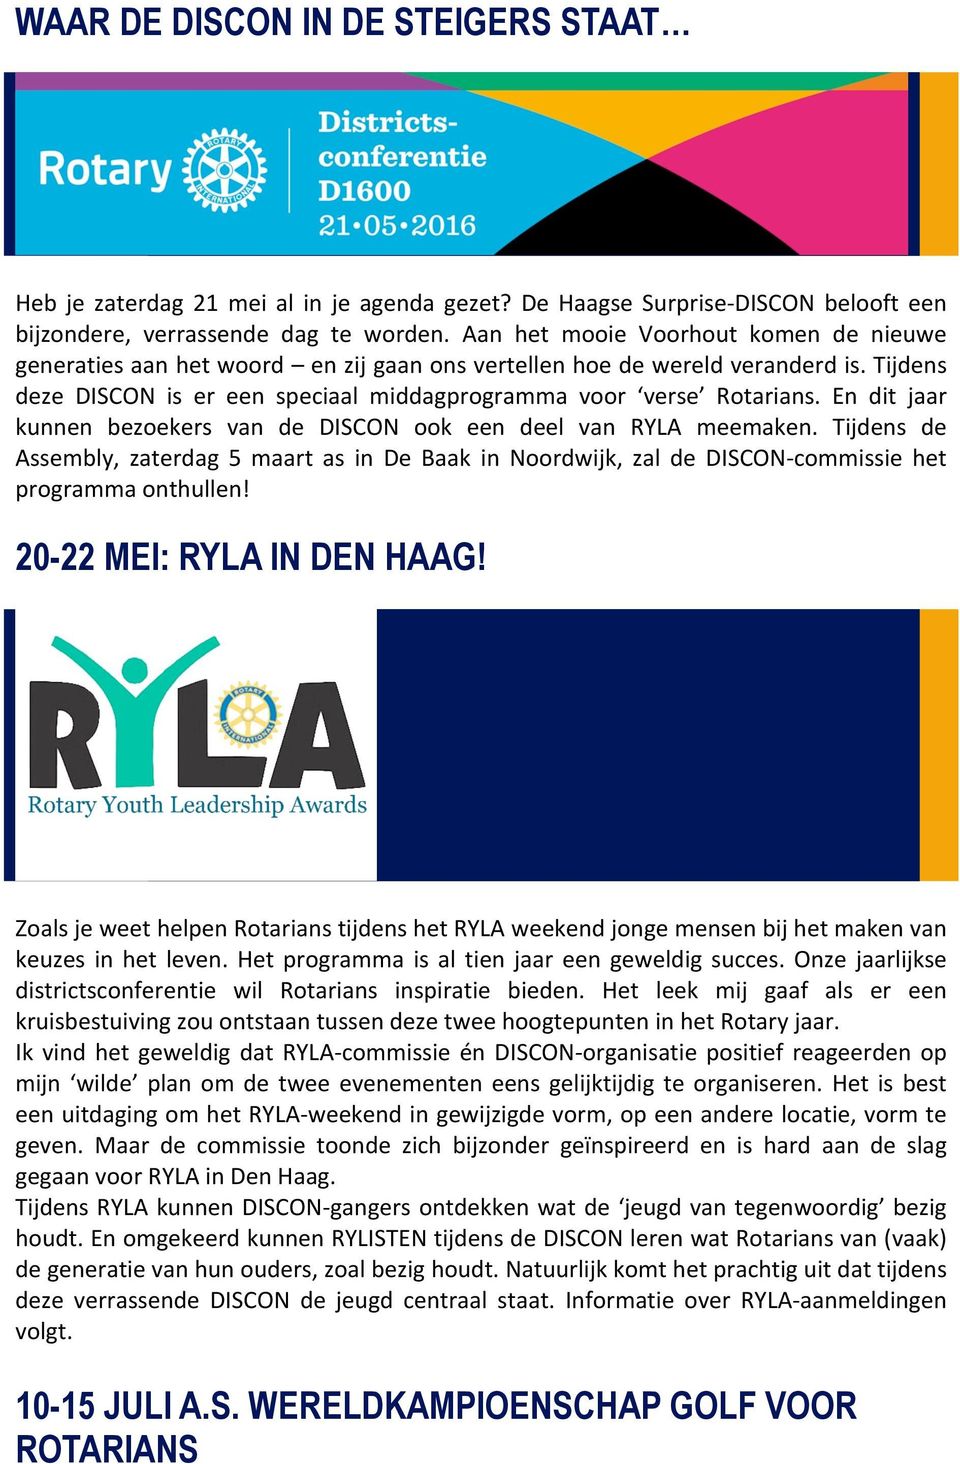 En dit jaar kunnen bezoekers van de DISCON ook een deel van RYLA meemaken. Tijdens de Assembly, zaterdag 5 maart as in De Baak in Noordwijk, zal de DISCON-commissie het programma onthullen!